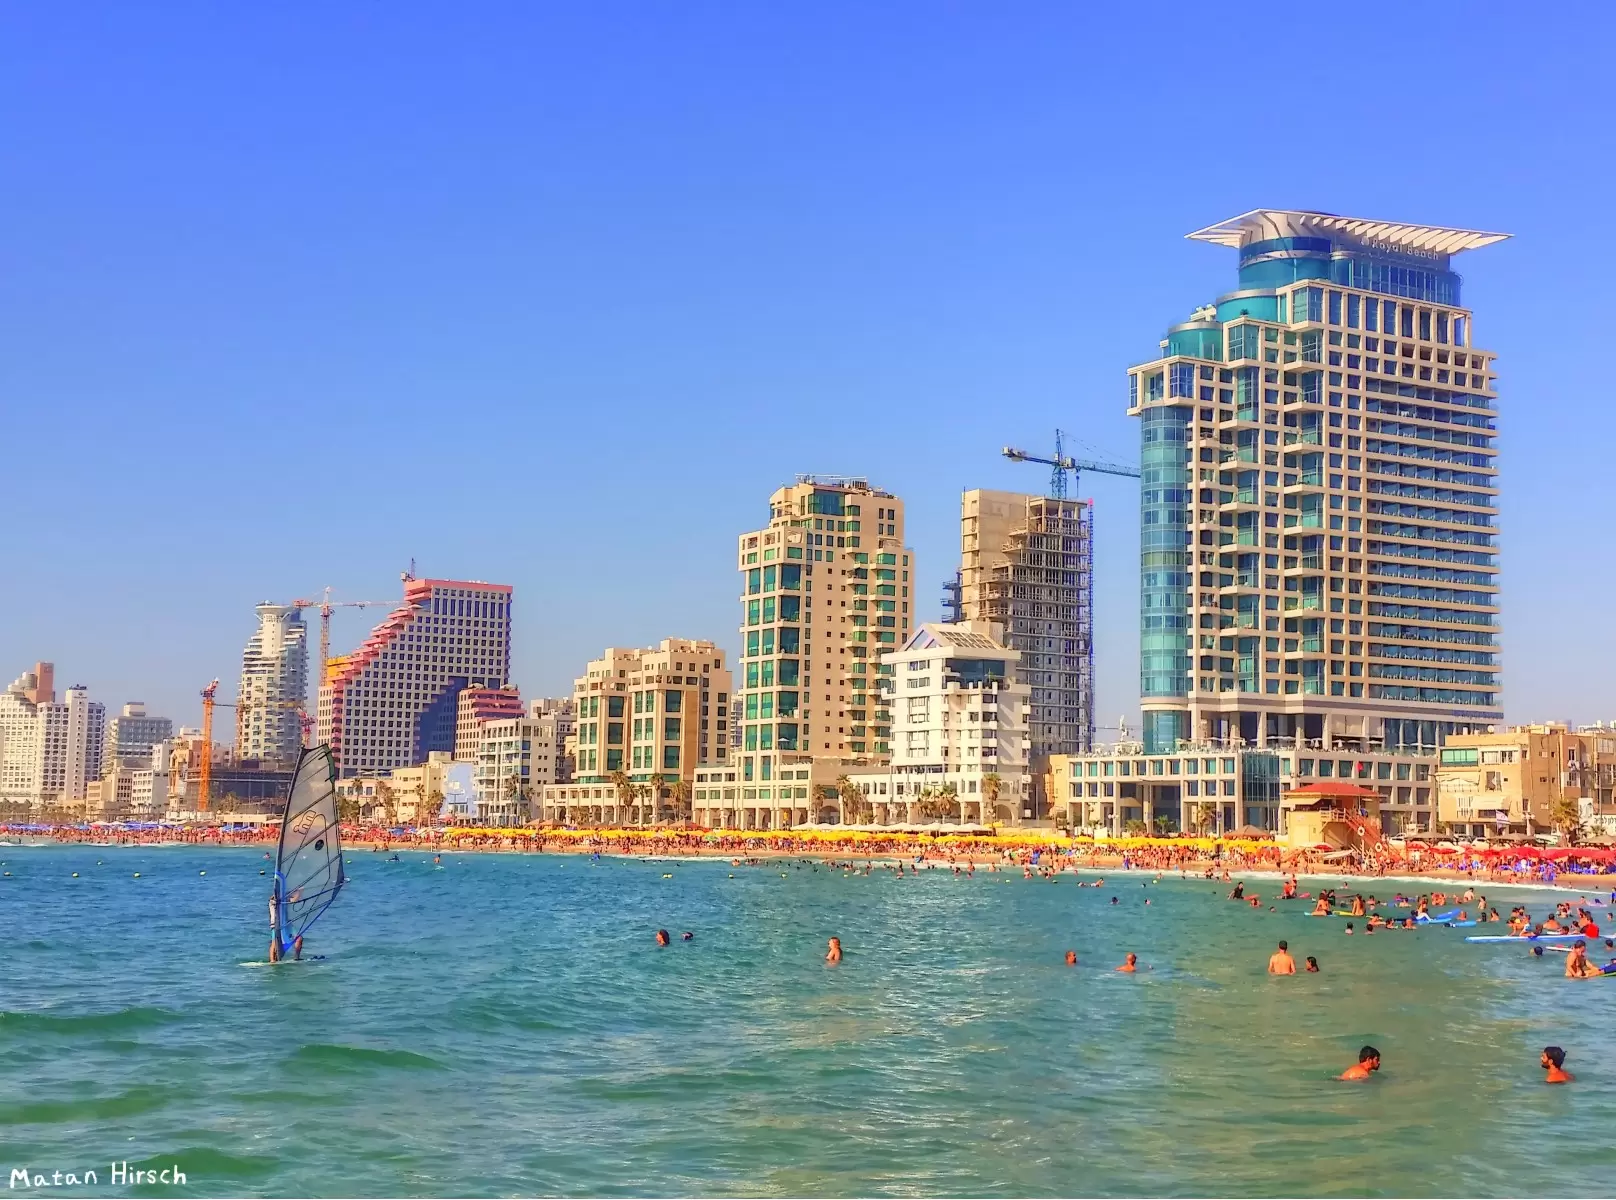 חוף הים בתל אביב - מתן הירש -  - מק''ט: 290102